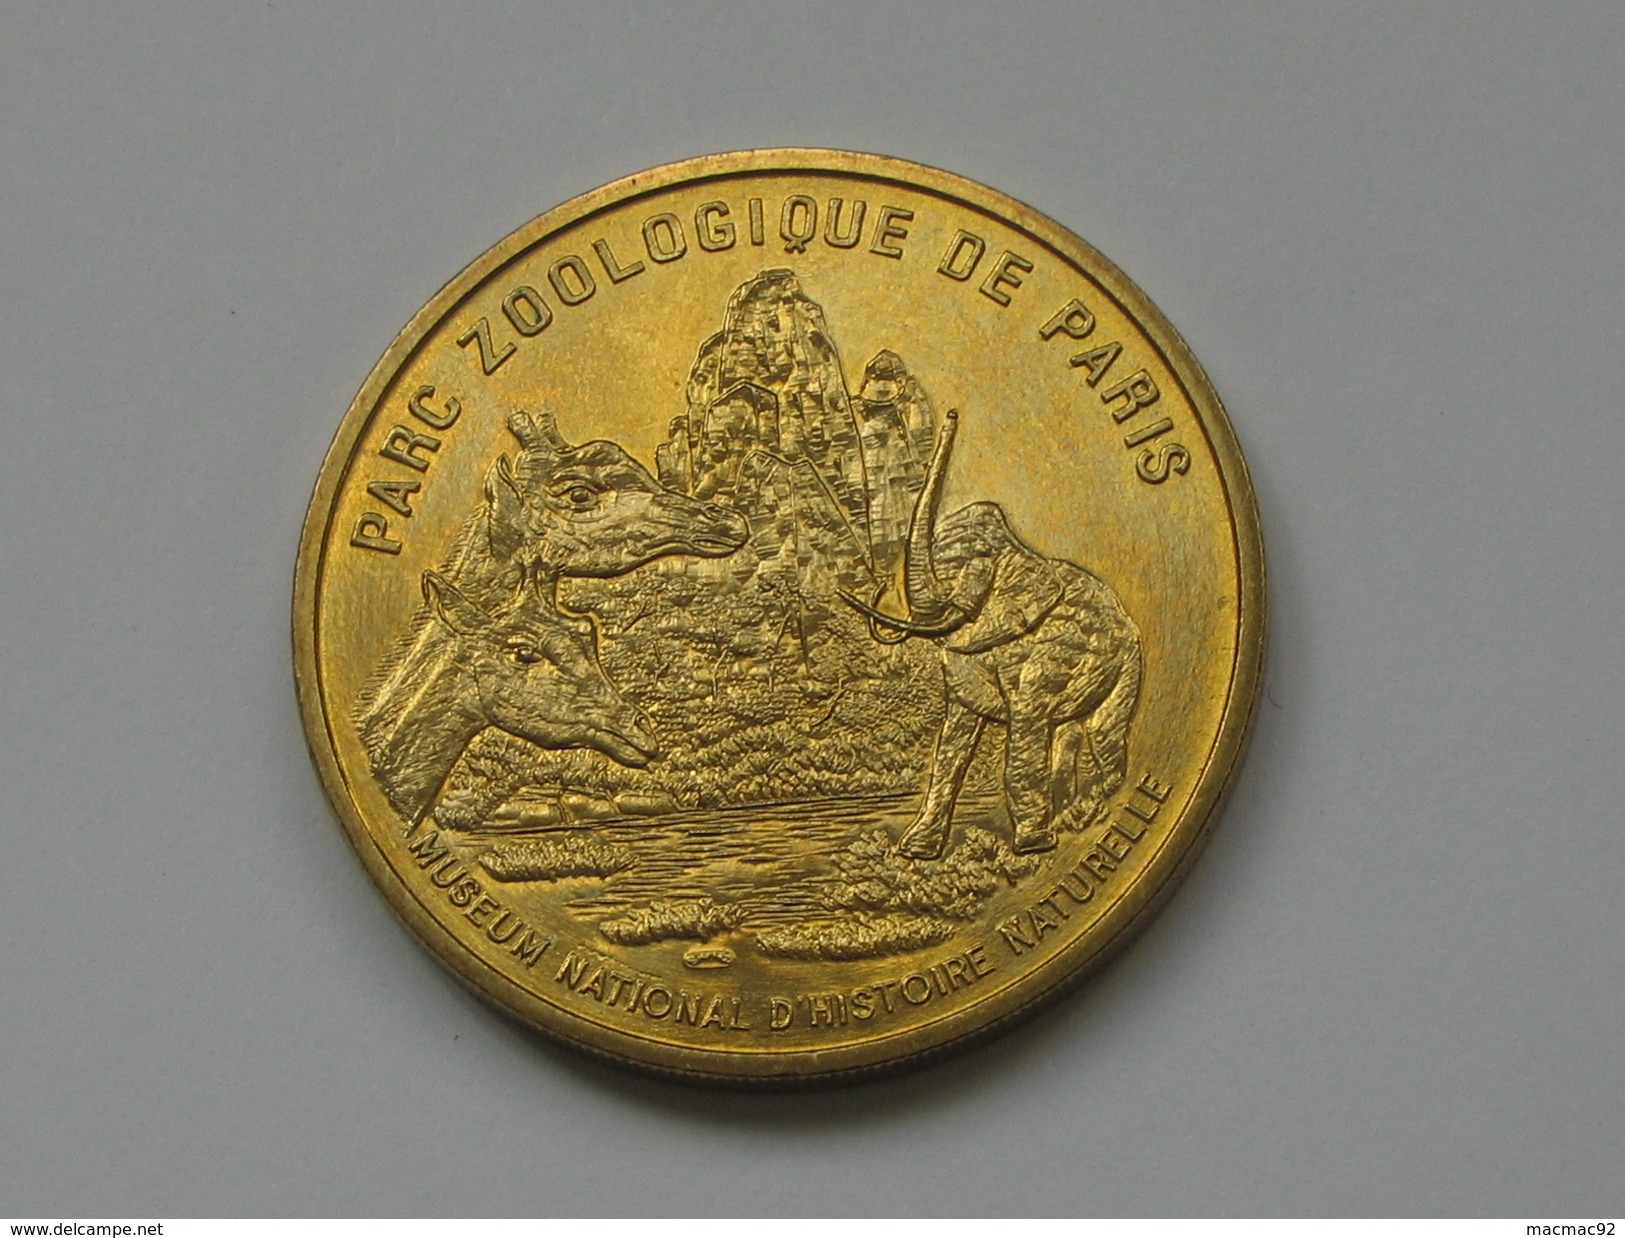 Monnaie De Paris 1997-1998 - PARC ZOOLOGIQUE DE PARIS   **** EN ACHAT IMMEDIAT  **** - Sin Fecha